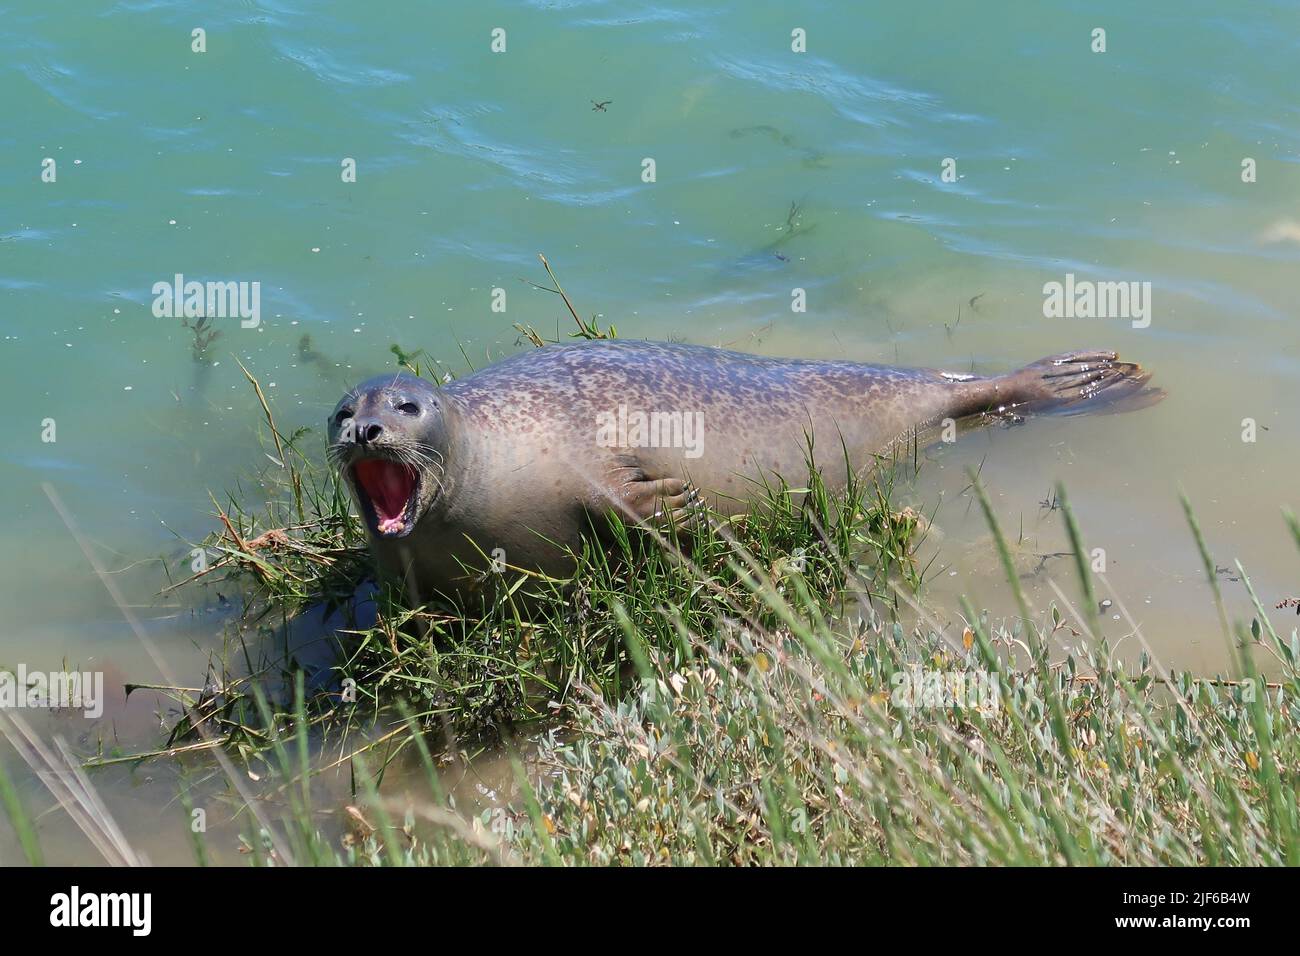 Un grand phoque gris vu dans la rivière Arun, West Sussex, Royaume-Uni. Emplacement inhabituel à 3 miles à l'intérieur des terres de la mer, mais bien connu localement depuis plusieurs années. Banque D'Images